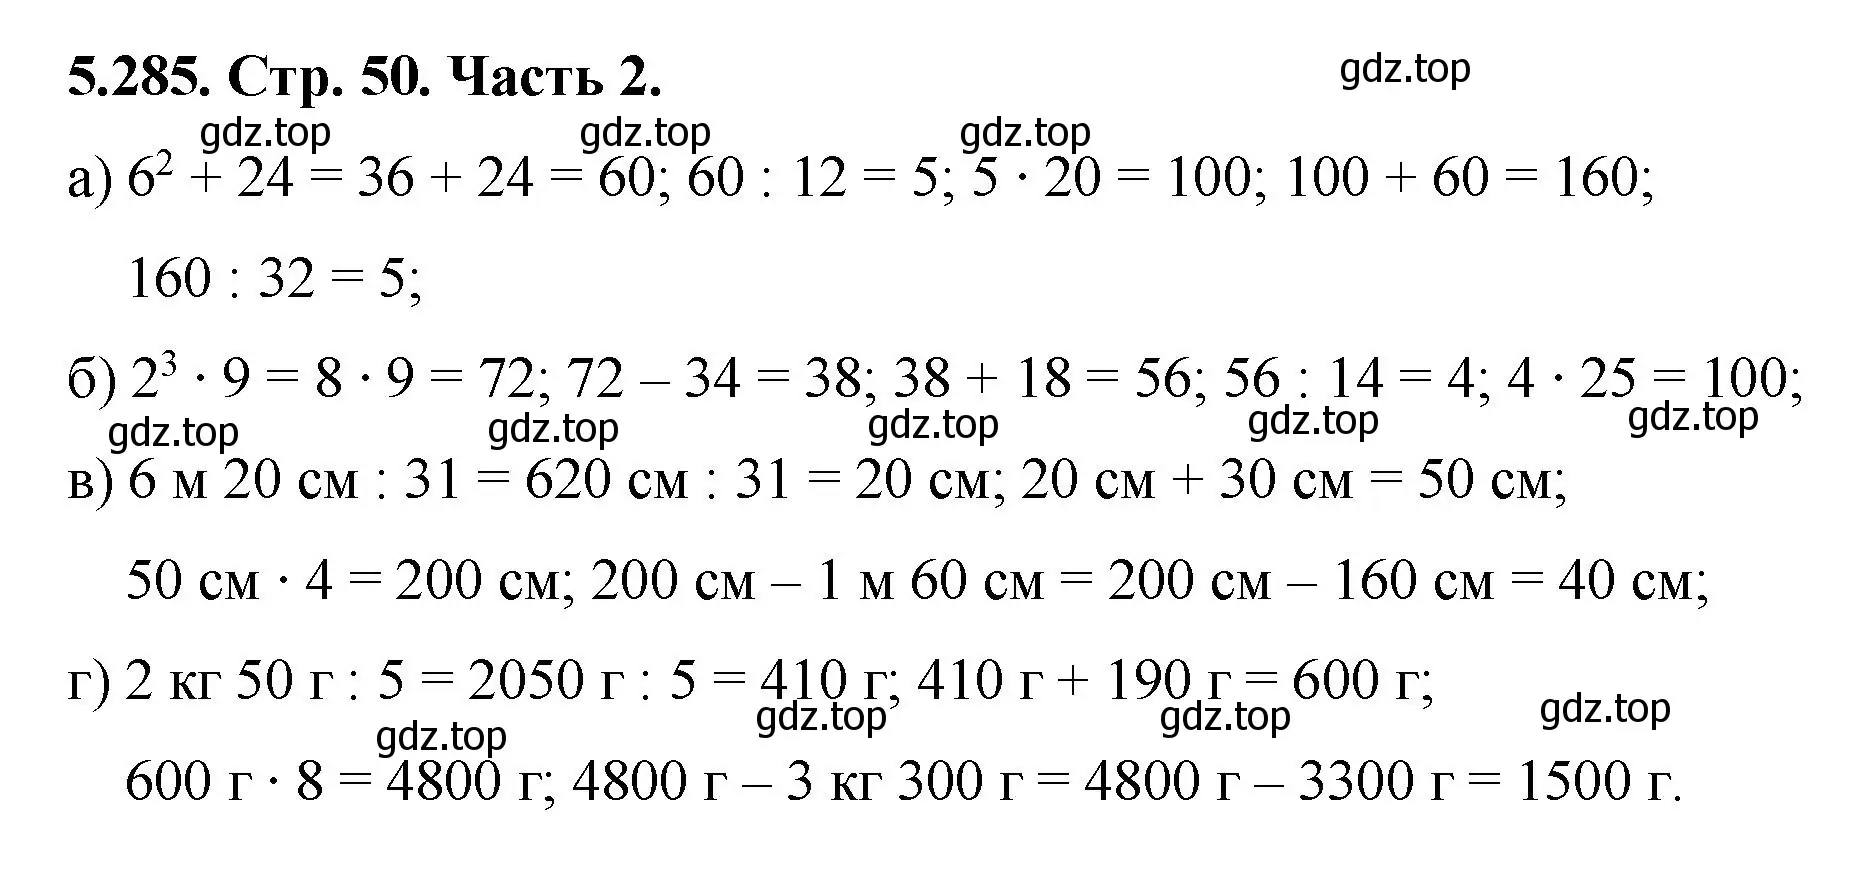 Решение номер 5.285 (страница 50) гдз по математике 5 класс Виленкин, Жохов, учебник 2 часть